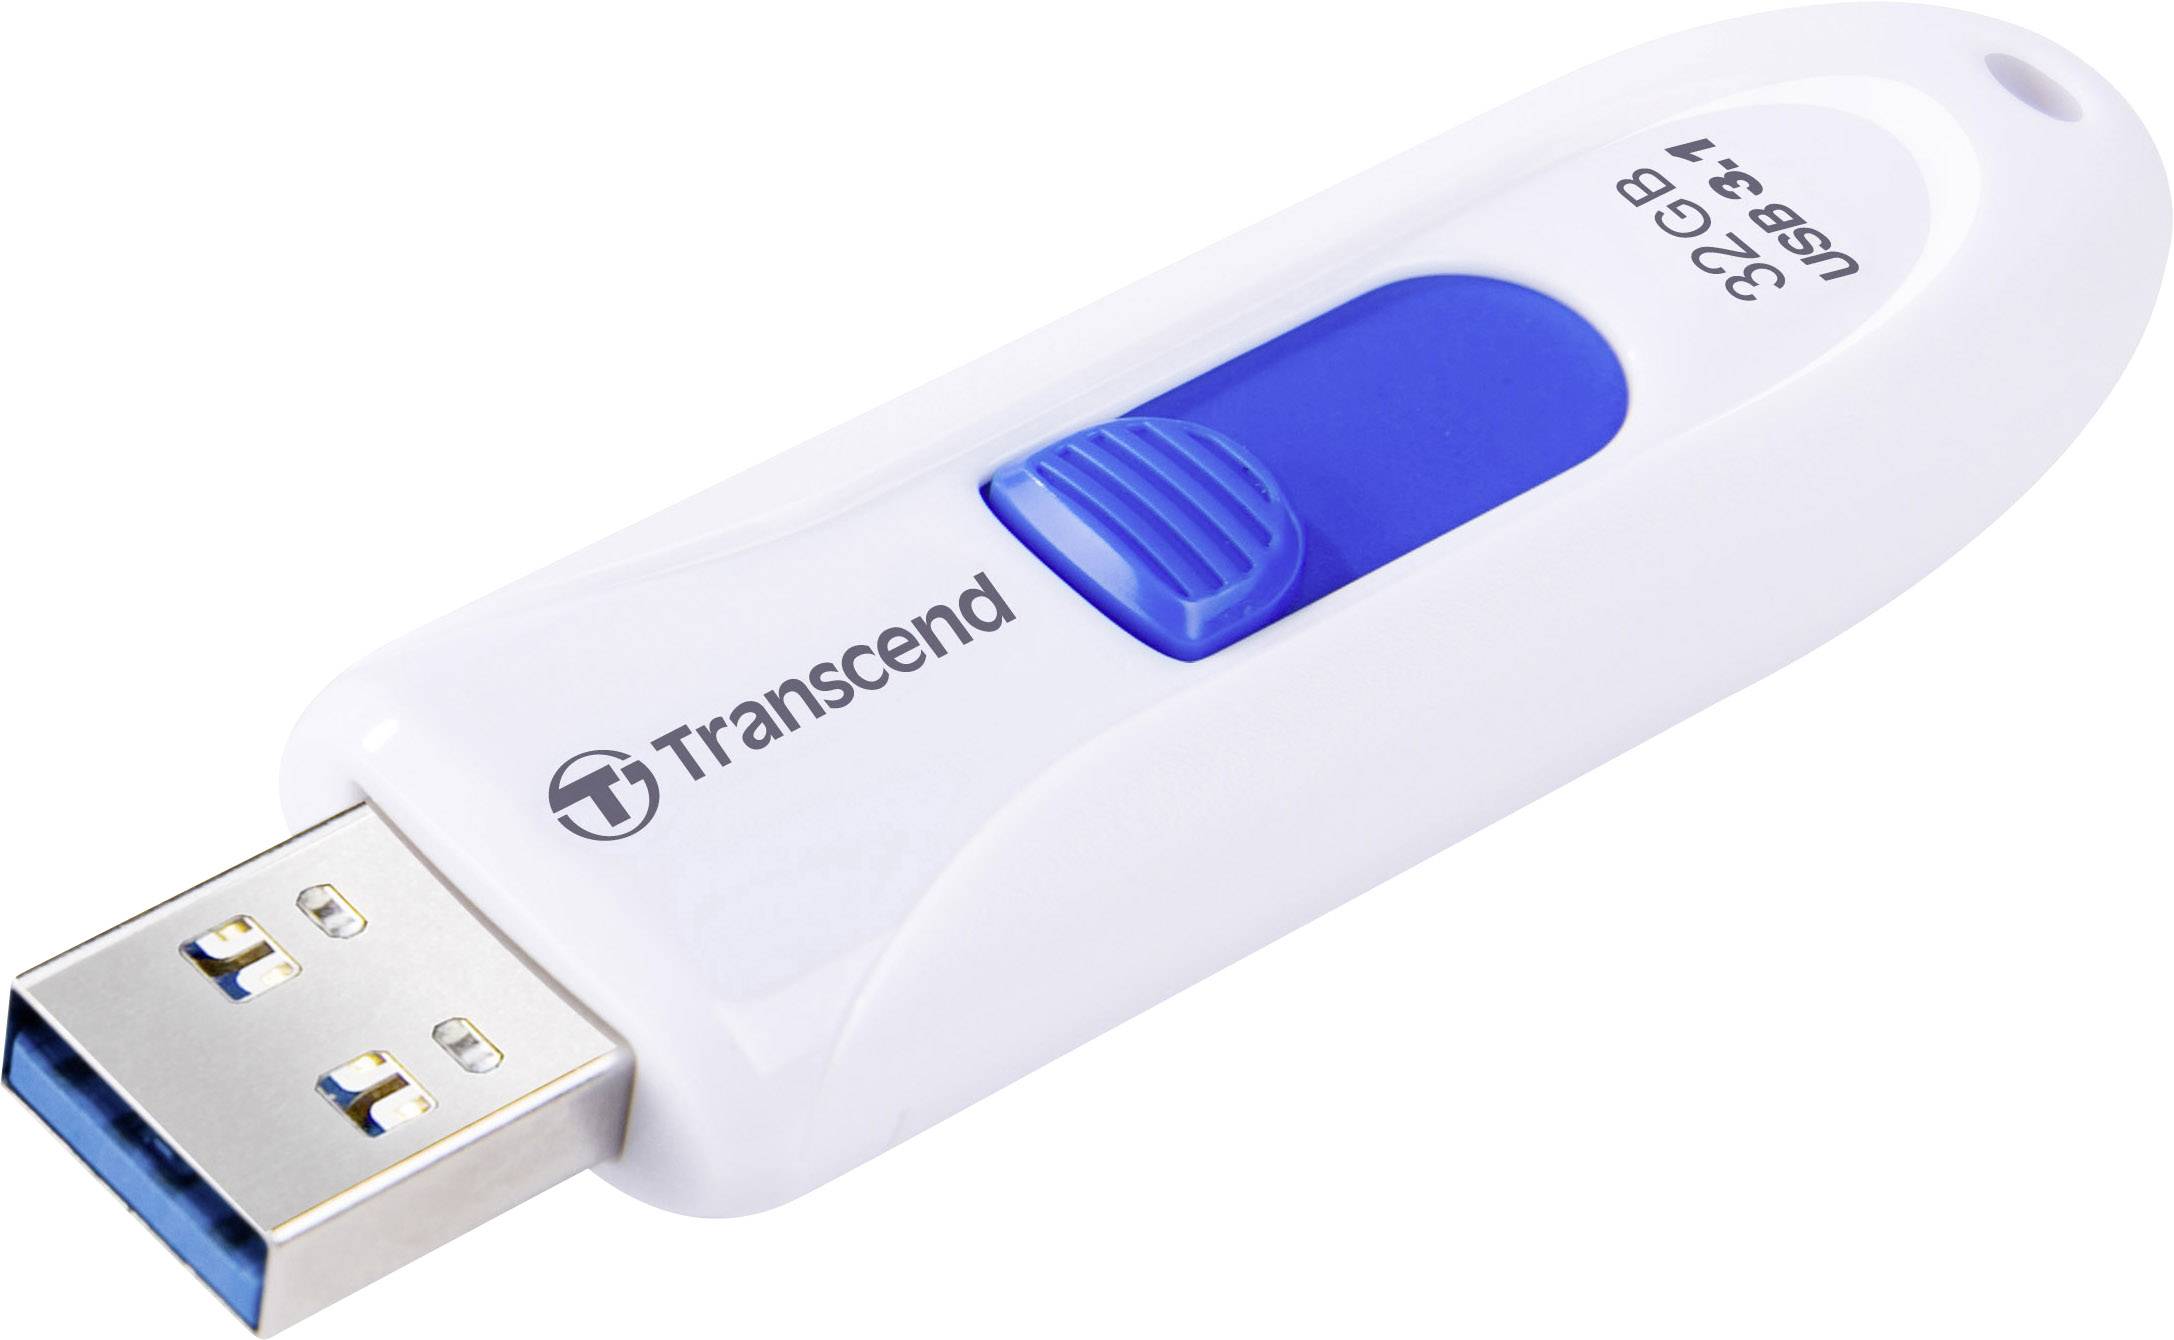 Transcend JetFlash 790 3.1 Gen 1 USB Flash Drives